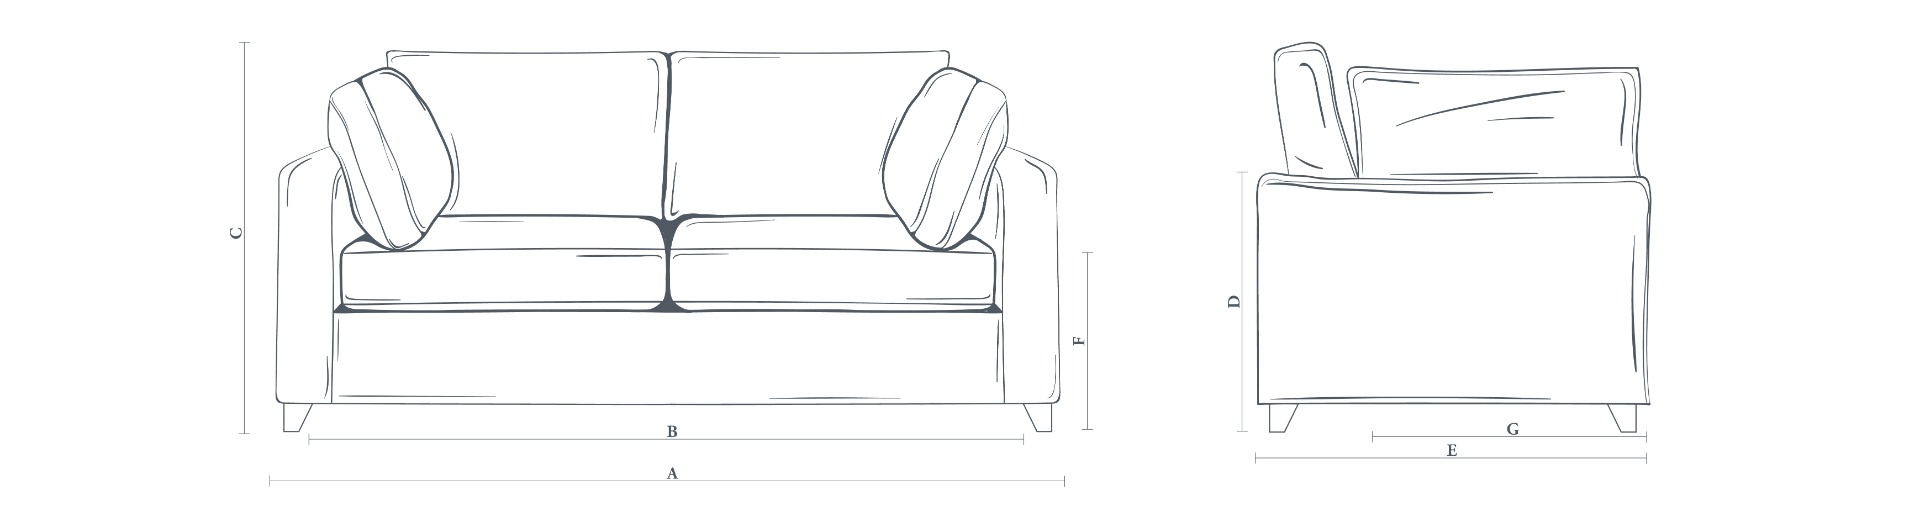 The Somerton Sofa 3 Seater